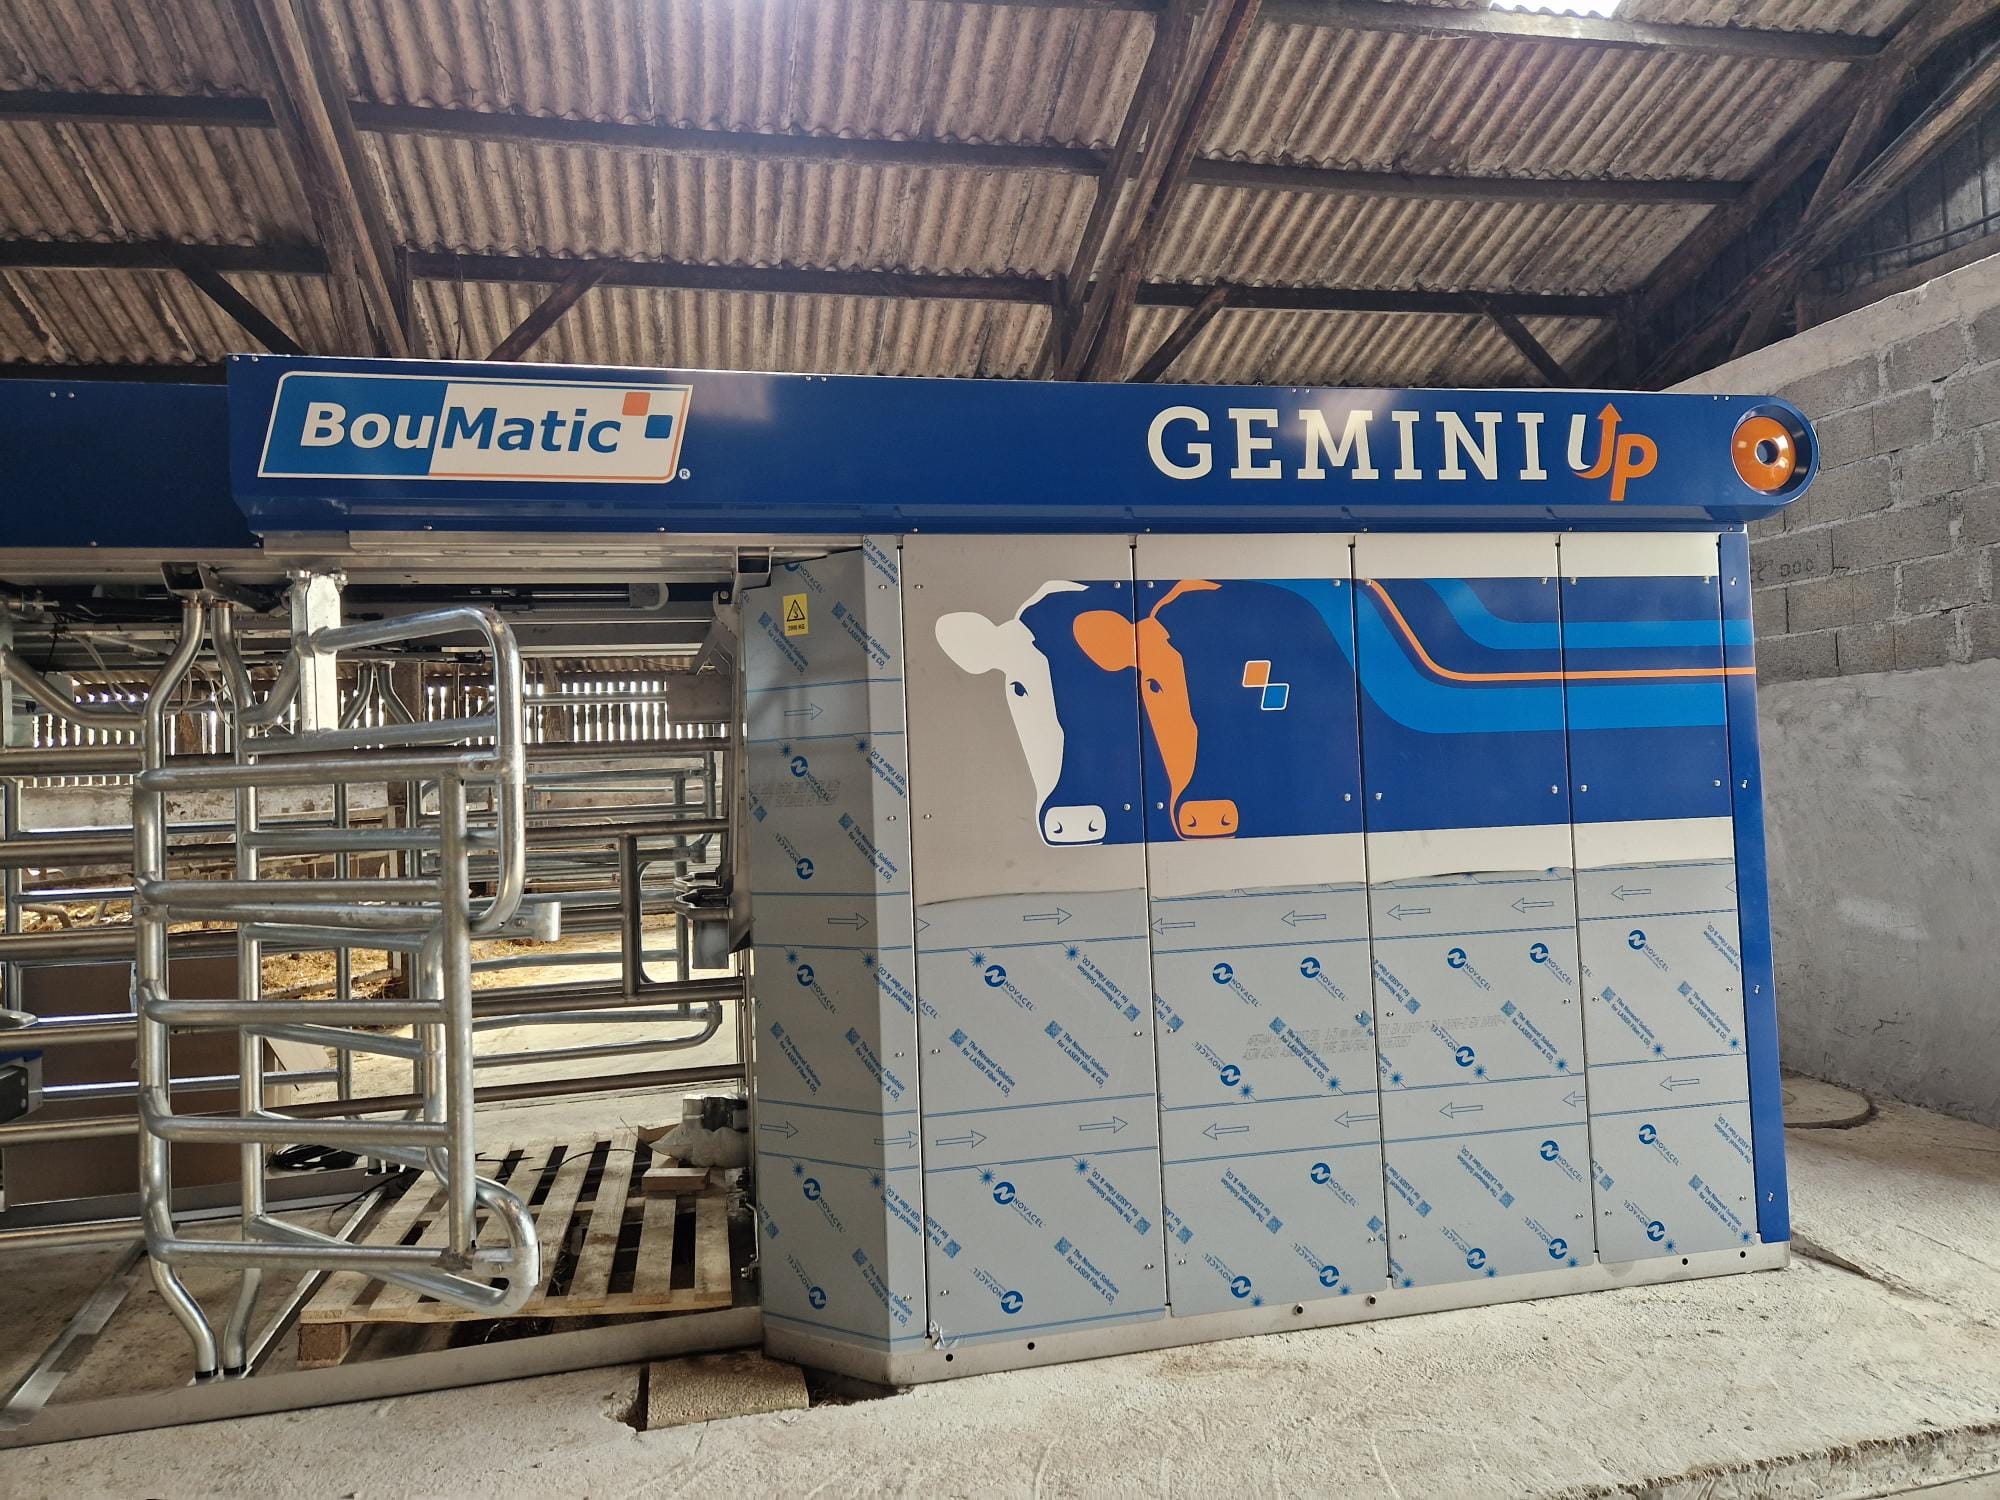 Robot de traite double box Gemini Up Boumatic à Plouarzel.